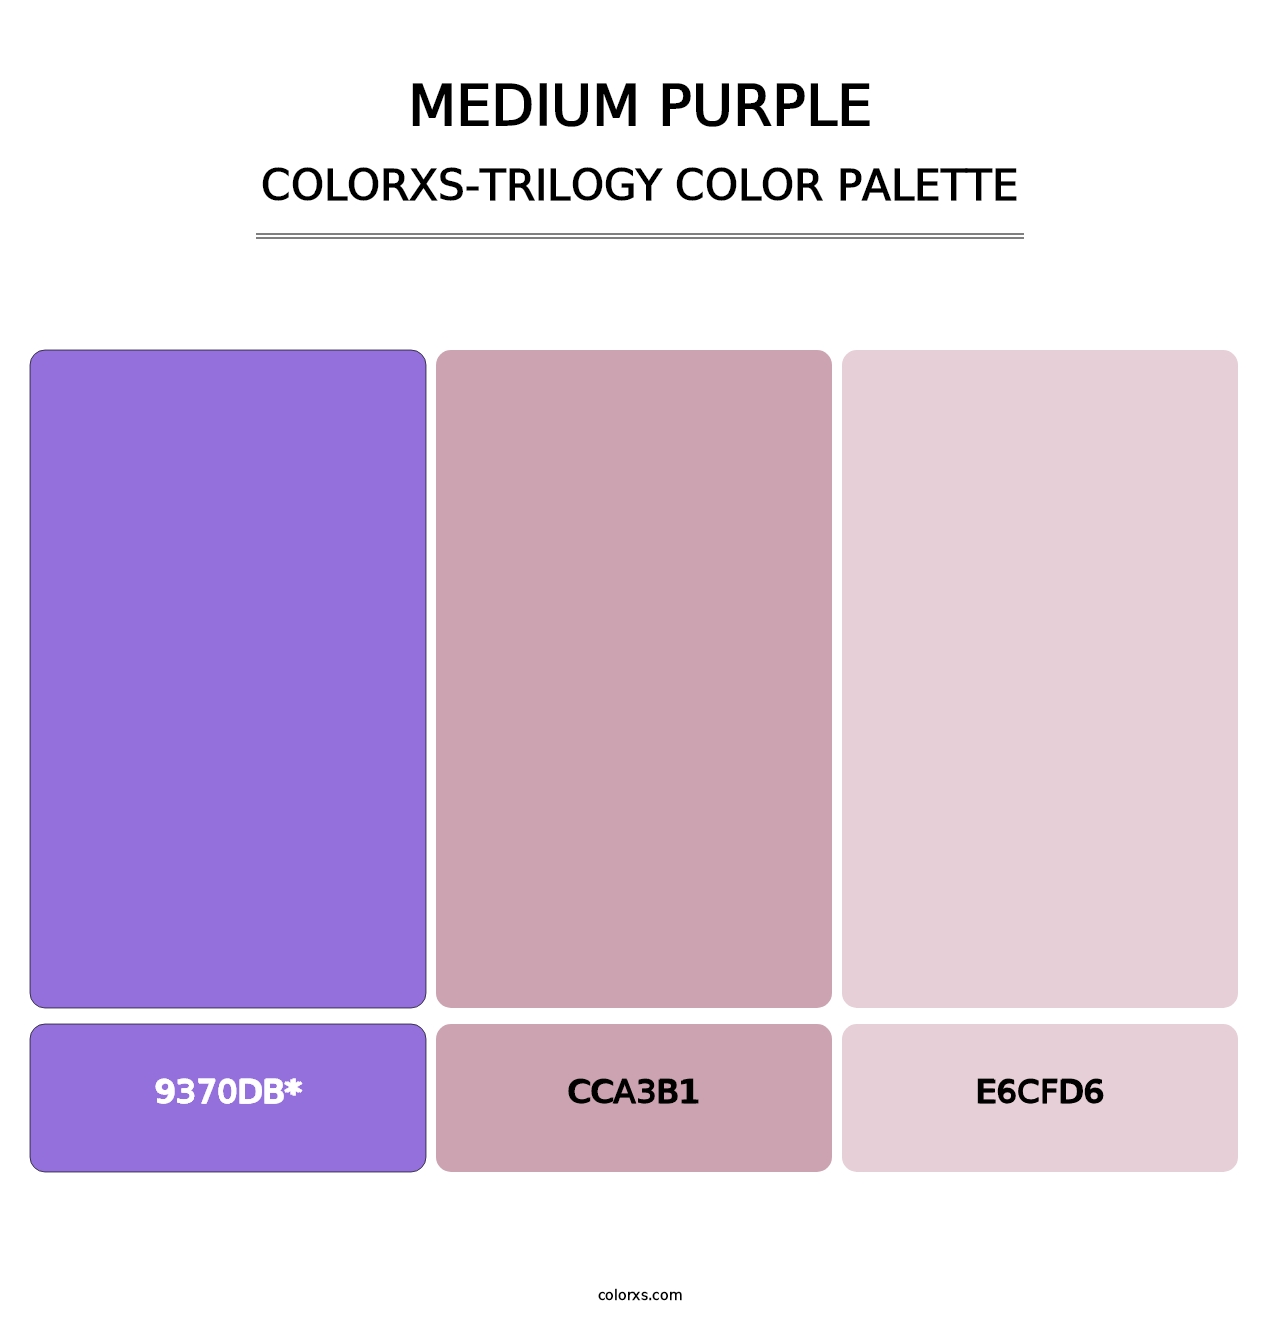 Medium Purple - Colorxs Trilogy Palette